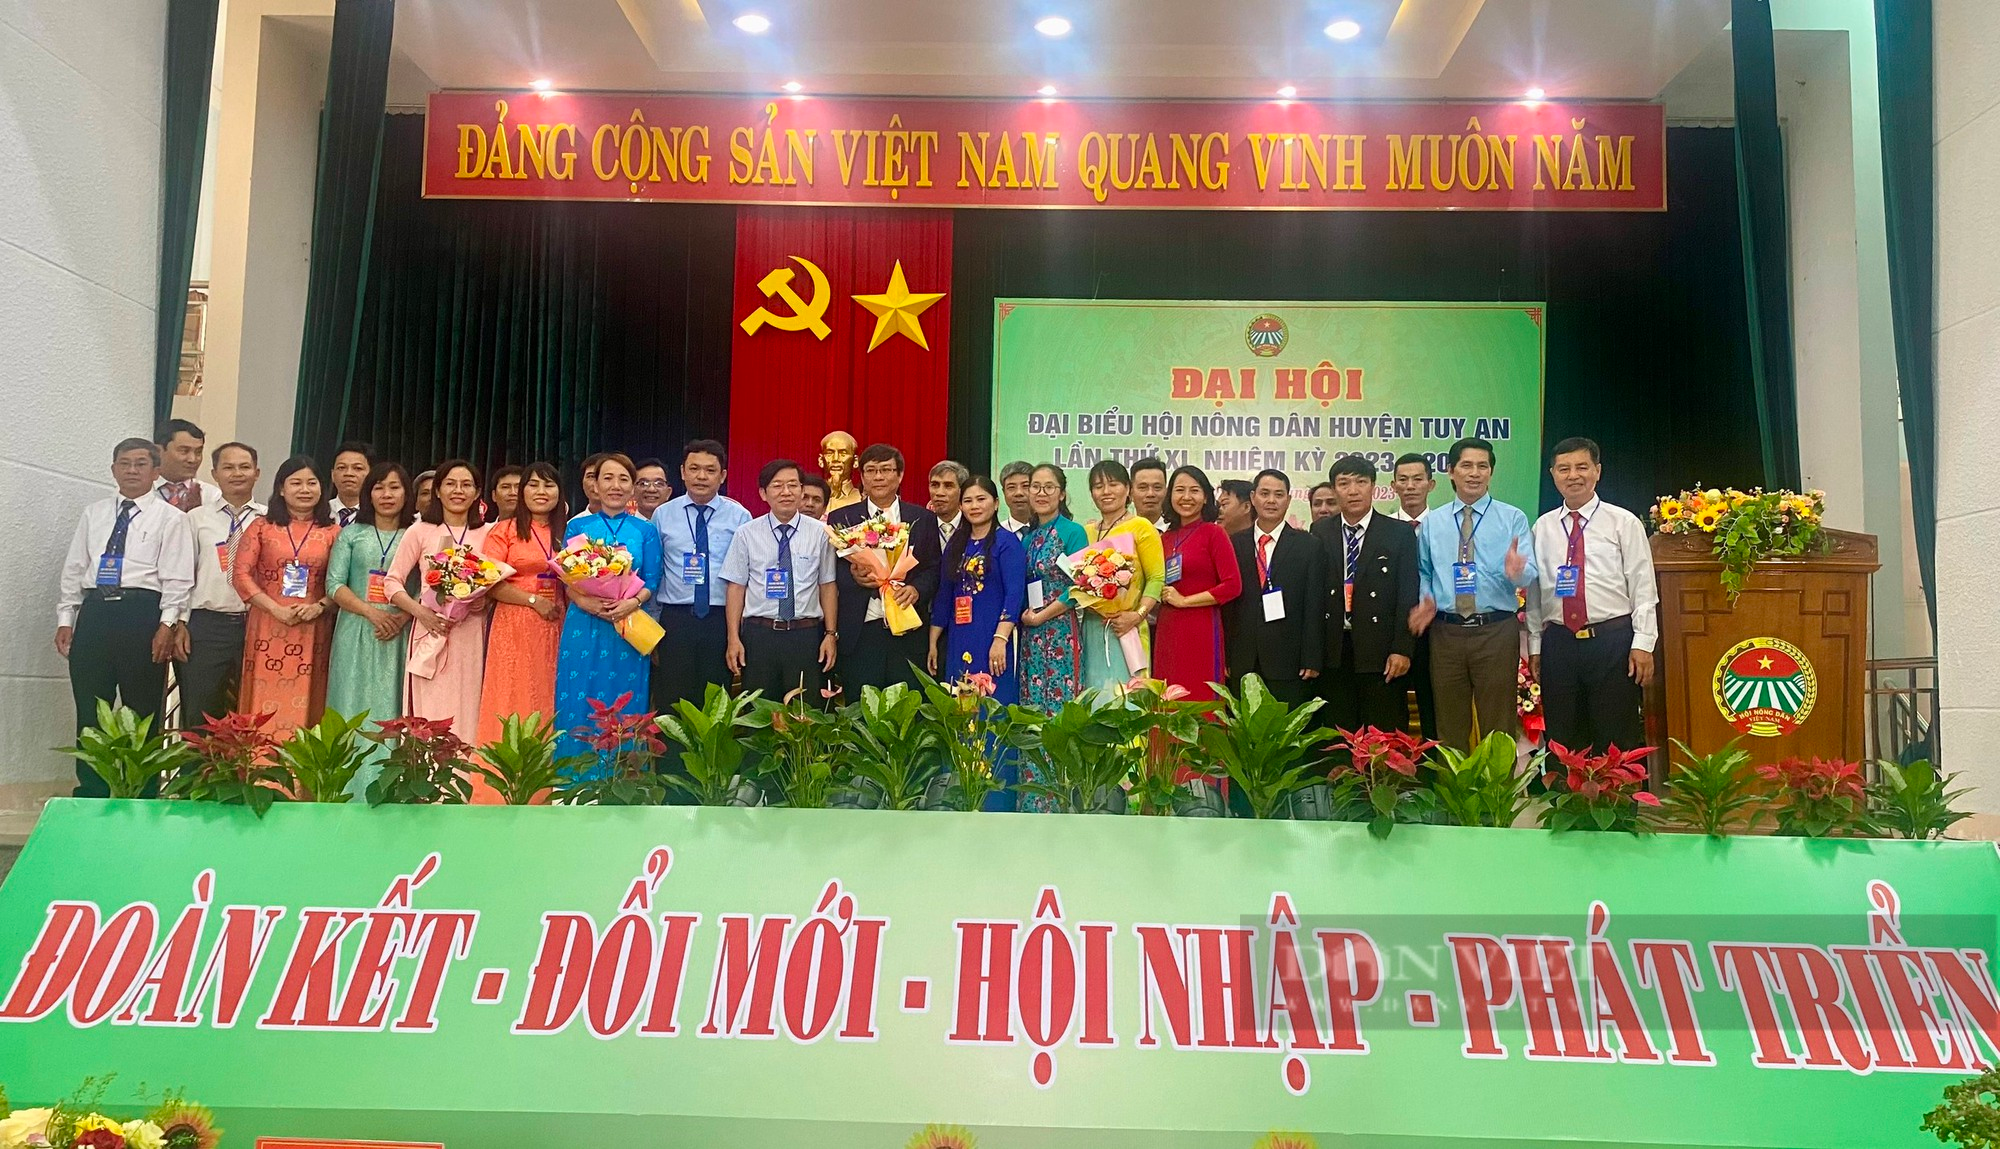 Phú Yên tổ chức thành công Đại hội điểm Hội Nông dân cấp huyện tại Tuy An - Ảnh 4.